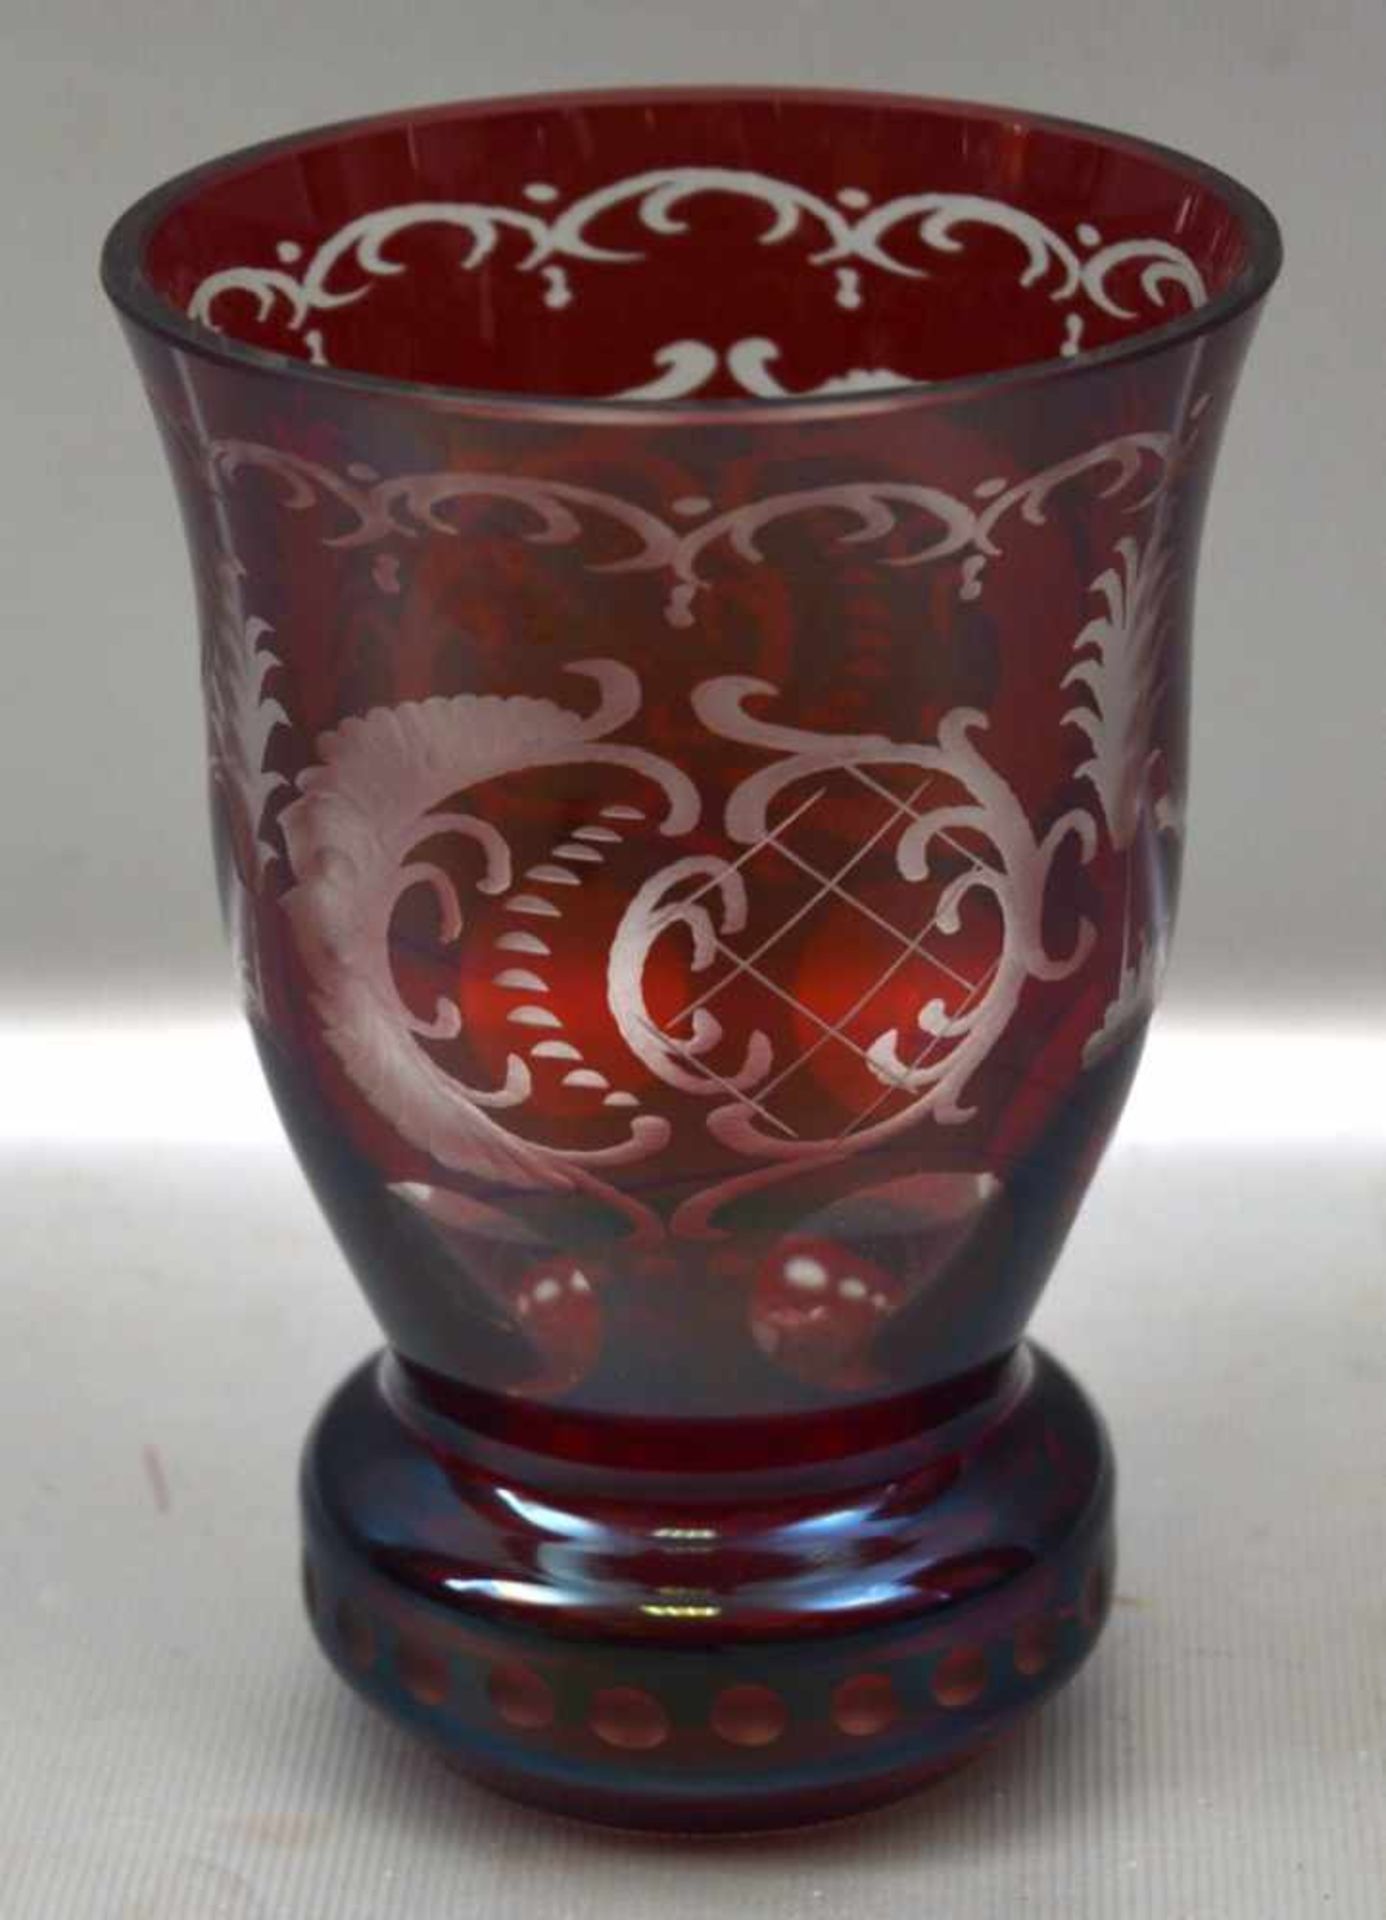 Becher farbl. Glas, mit Jagdszenen geschliffen, mit rotem Überfang, H 13 cm